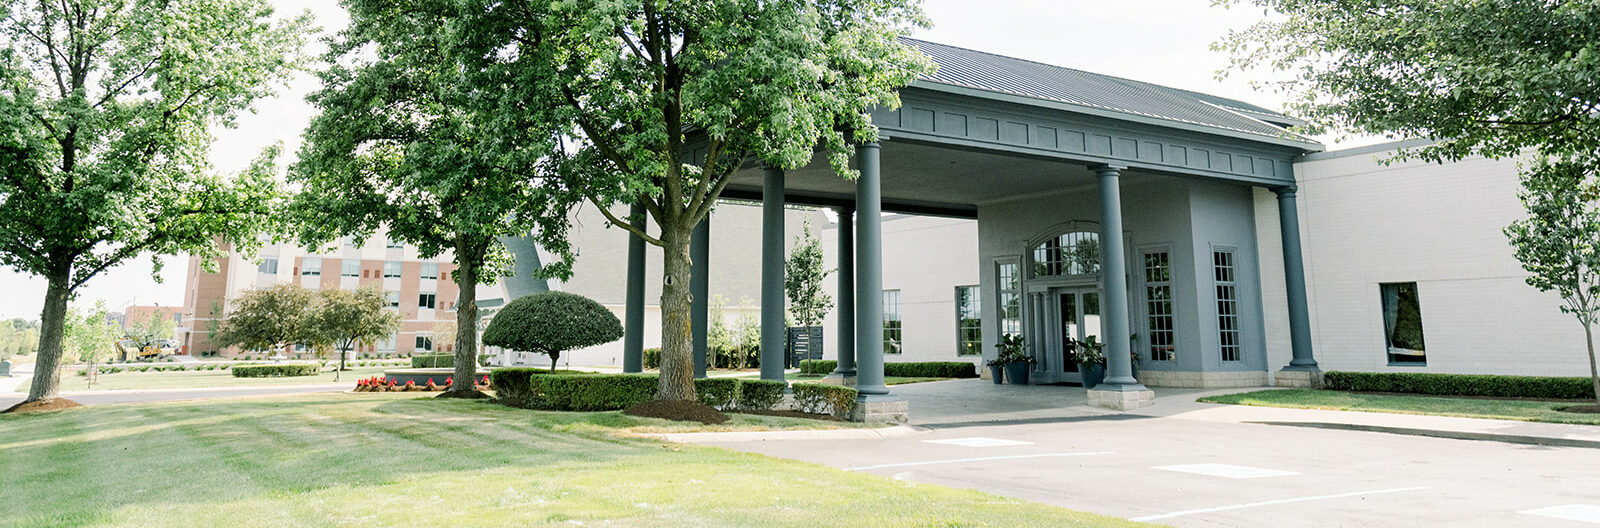 Ritz Charles Main Campus Entrance